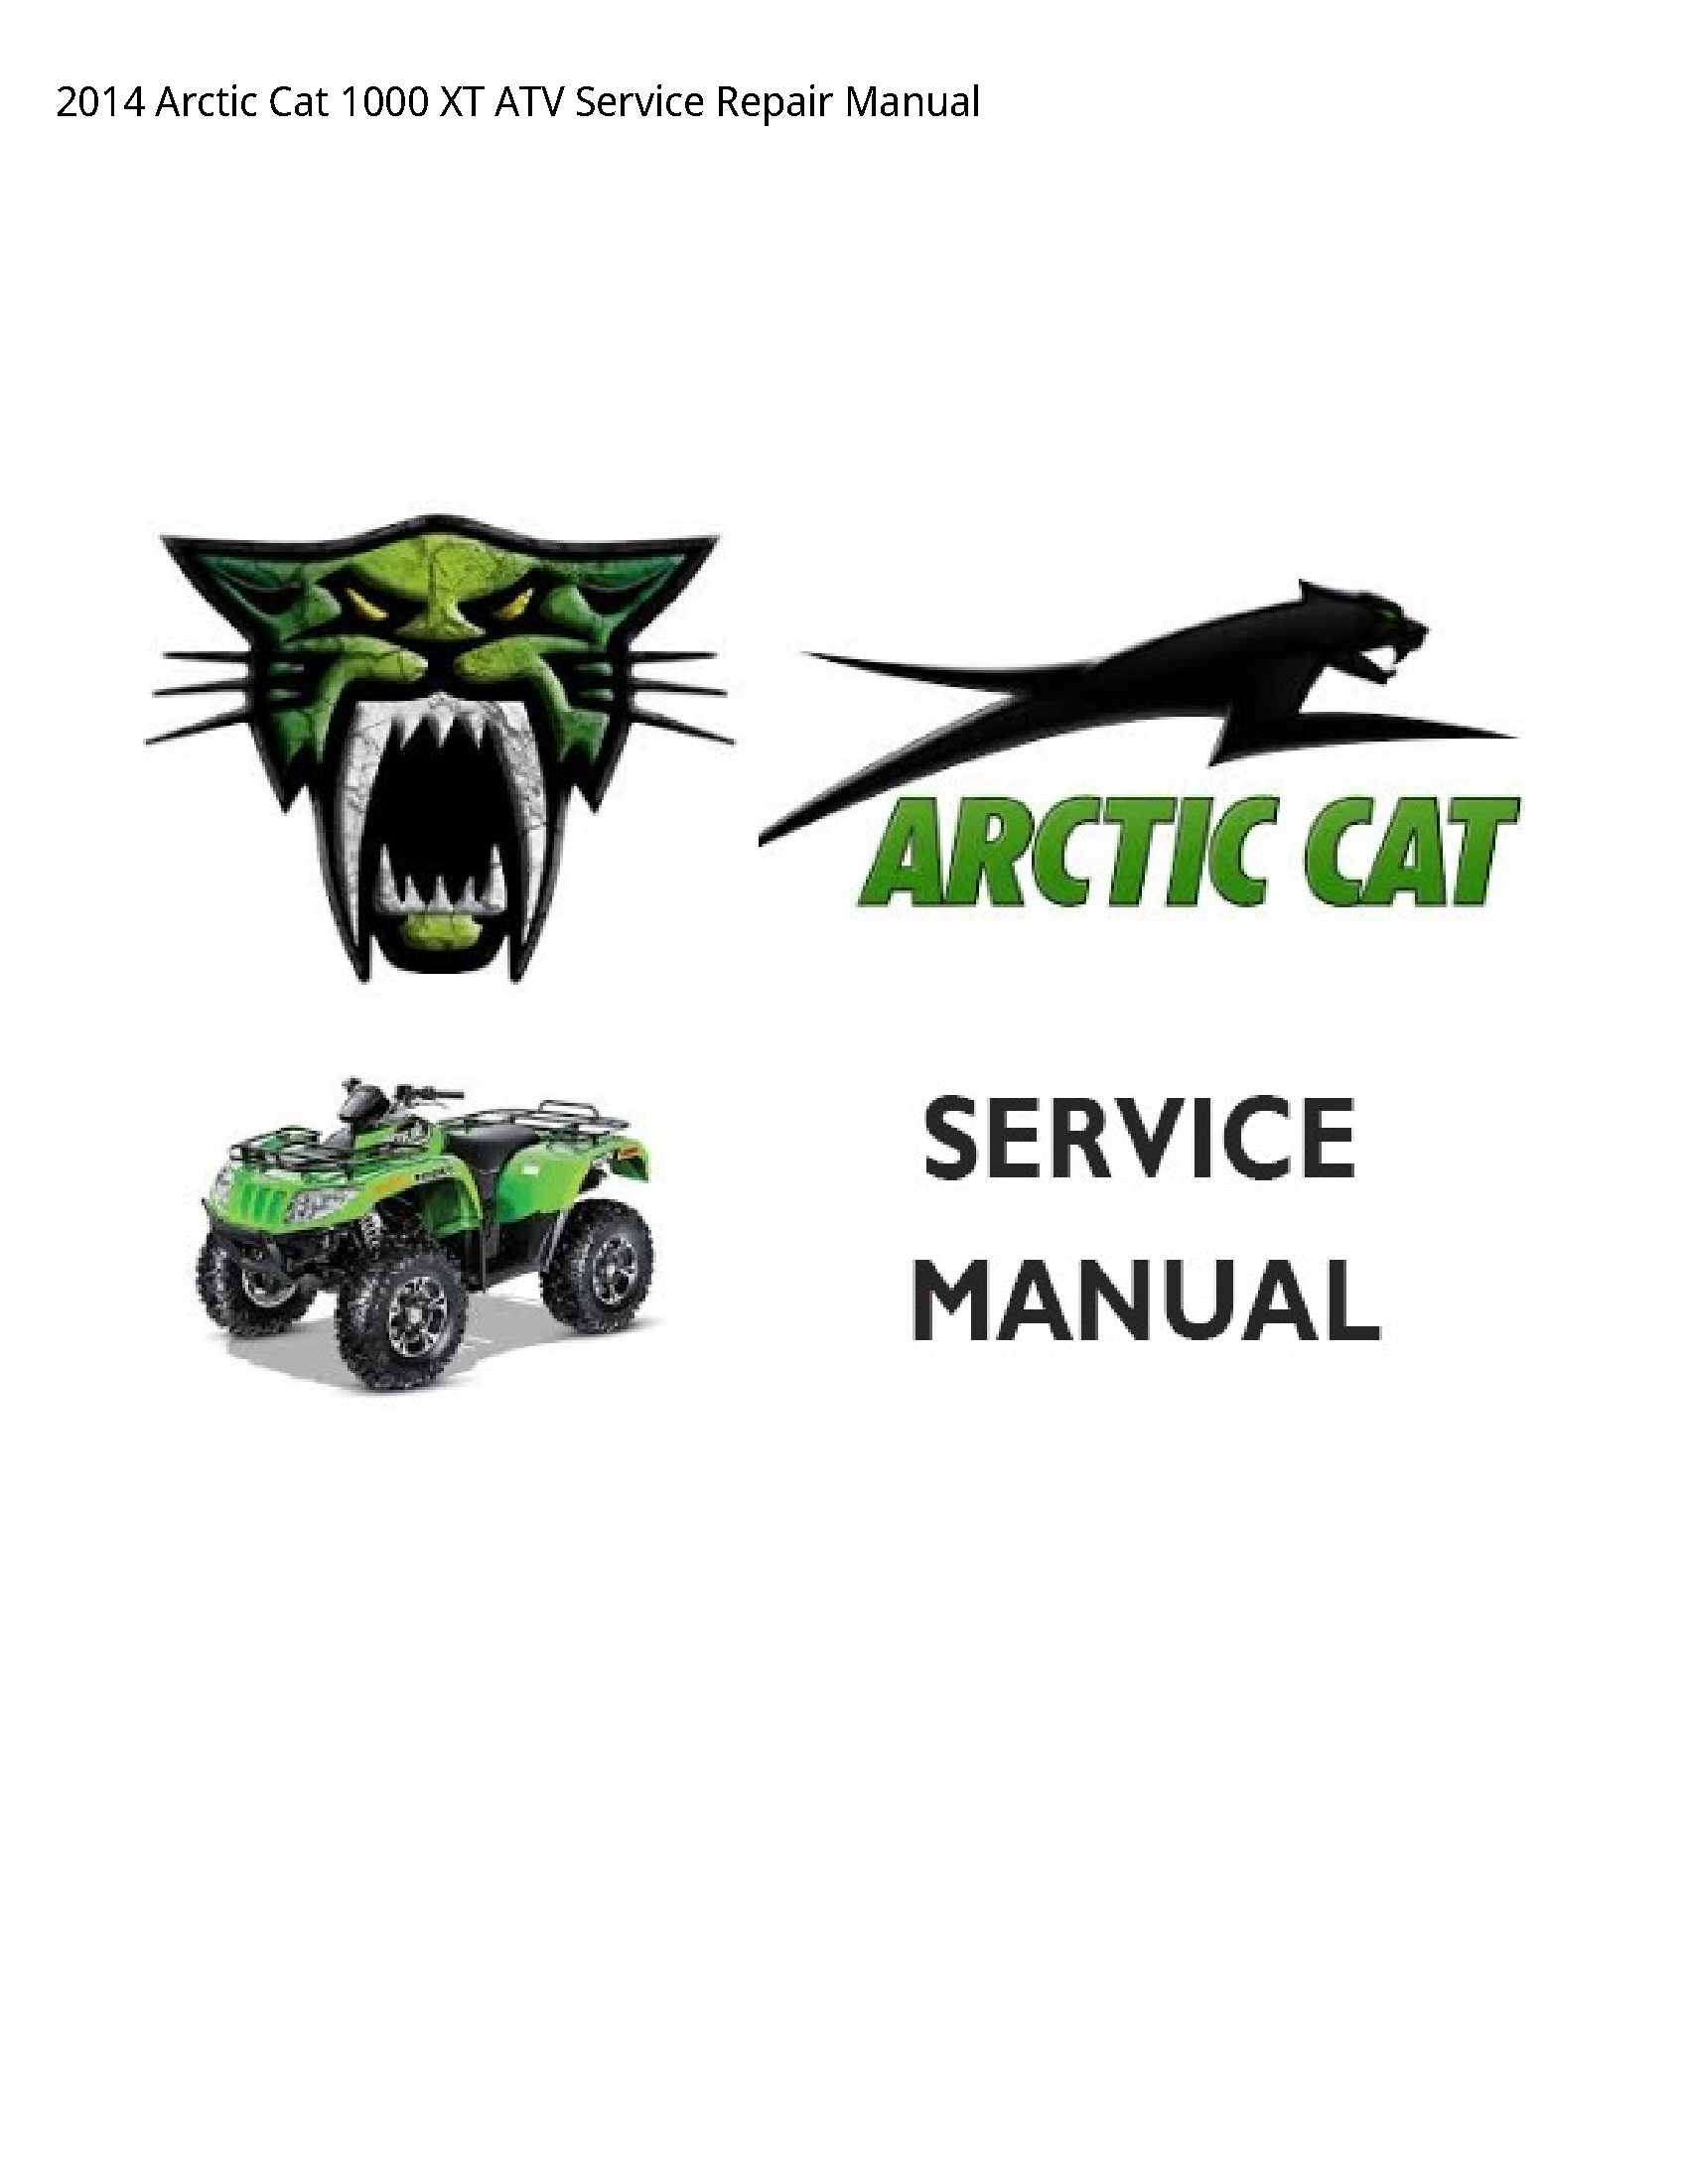 Arctic Cat 1000 XT ATV manual